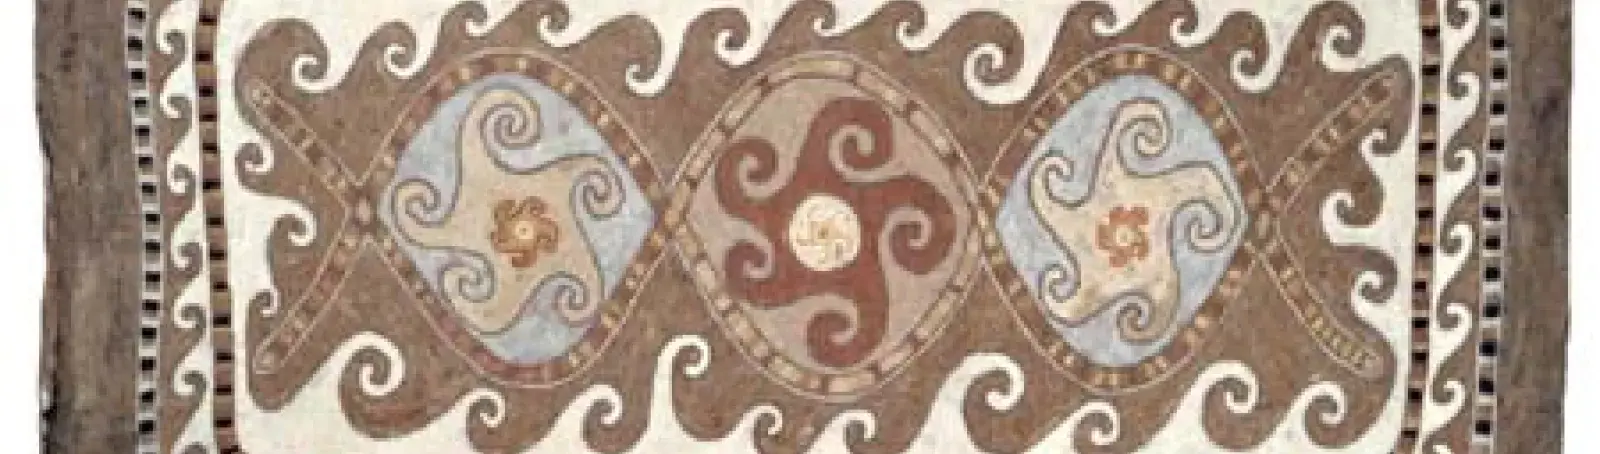 41. kép: Mai növényi festésű nemeztakaró türkmen takaró nyomán, Nagy Mari és Vidák István munkája